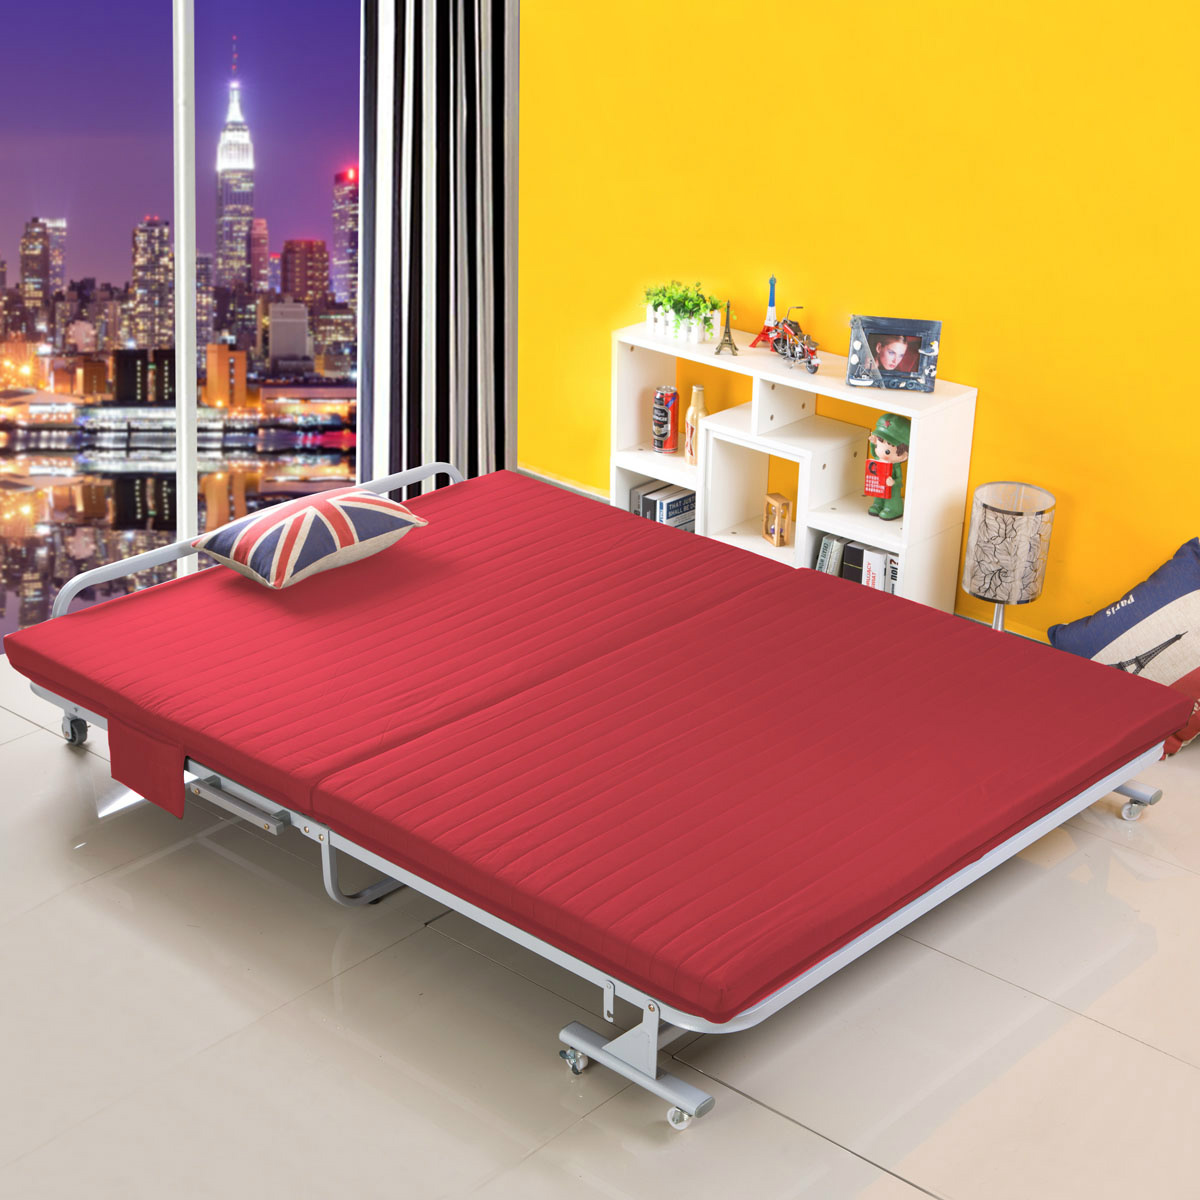 厂家直销折叠床单人木板海绵床简易沙发床办公室午休床成人午睡床-阿里巴巴